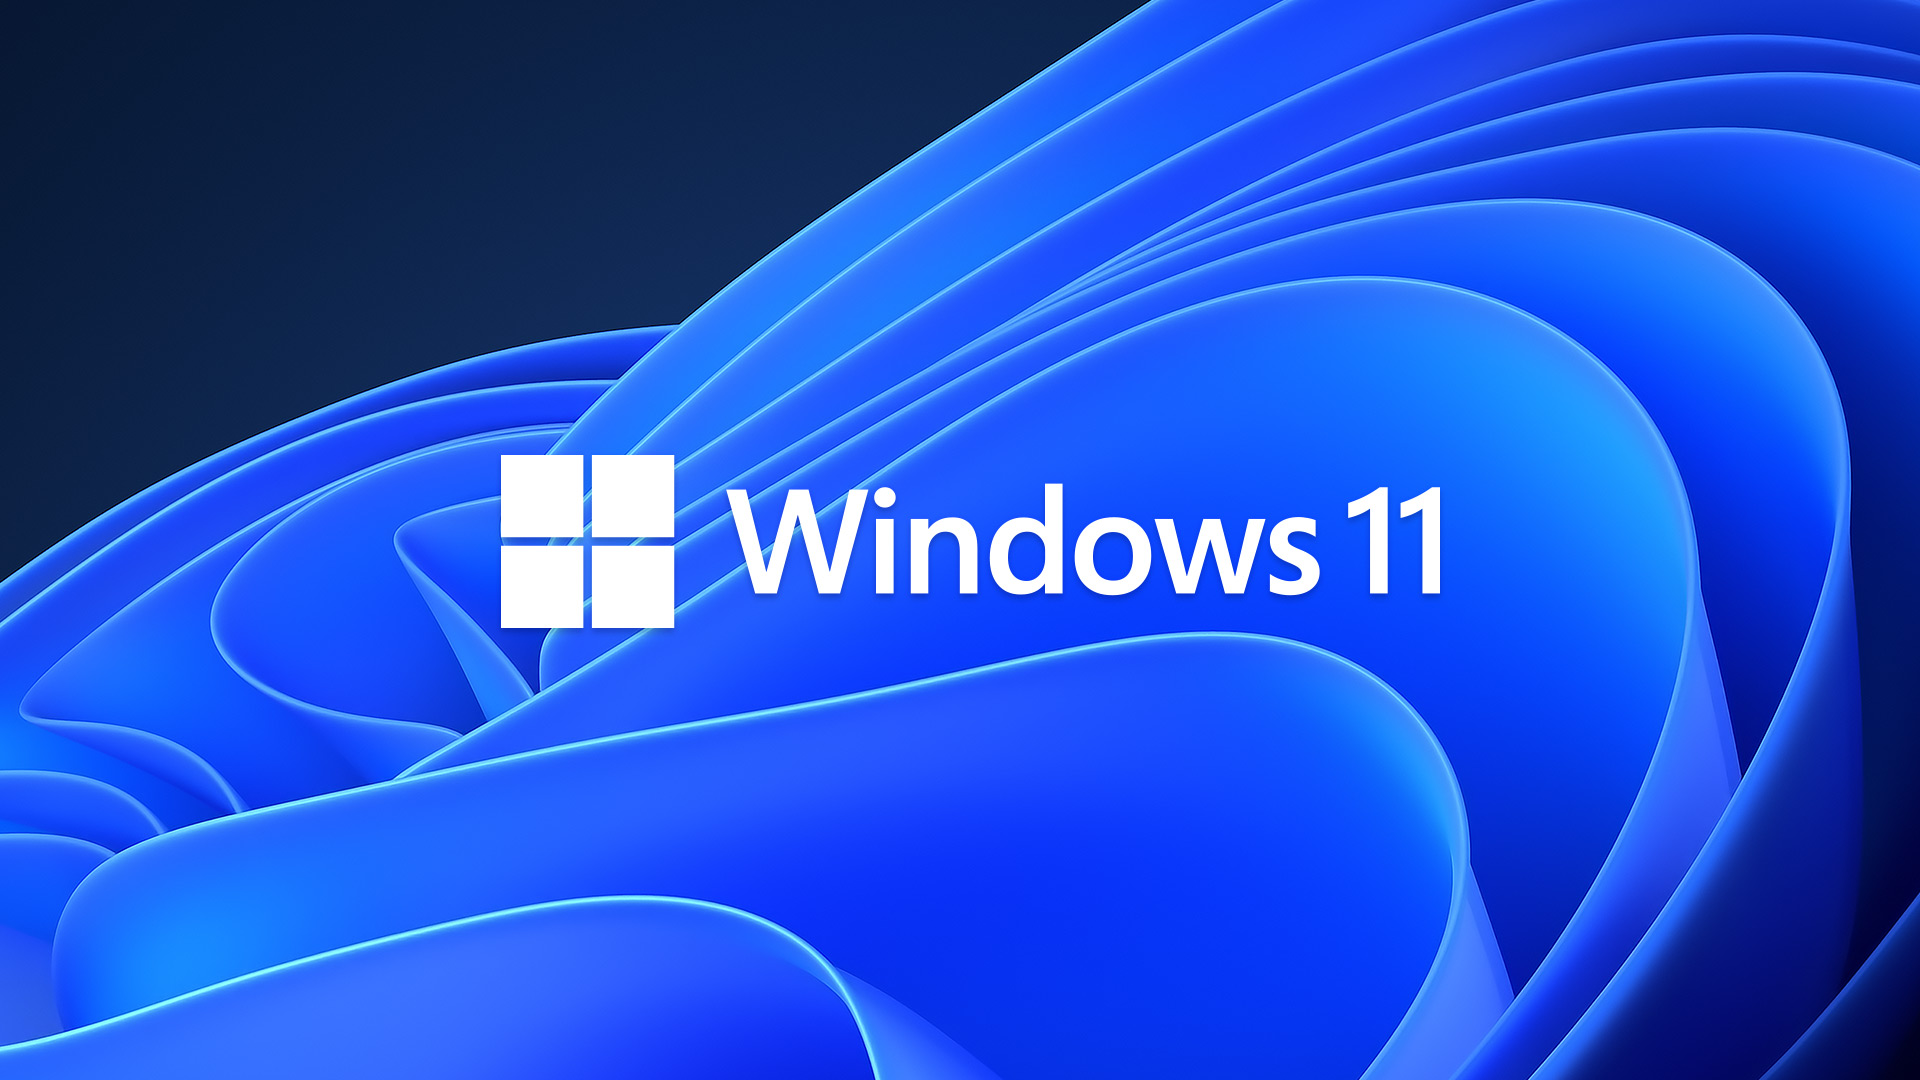 Windows 11 commence à gagner en popularité